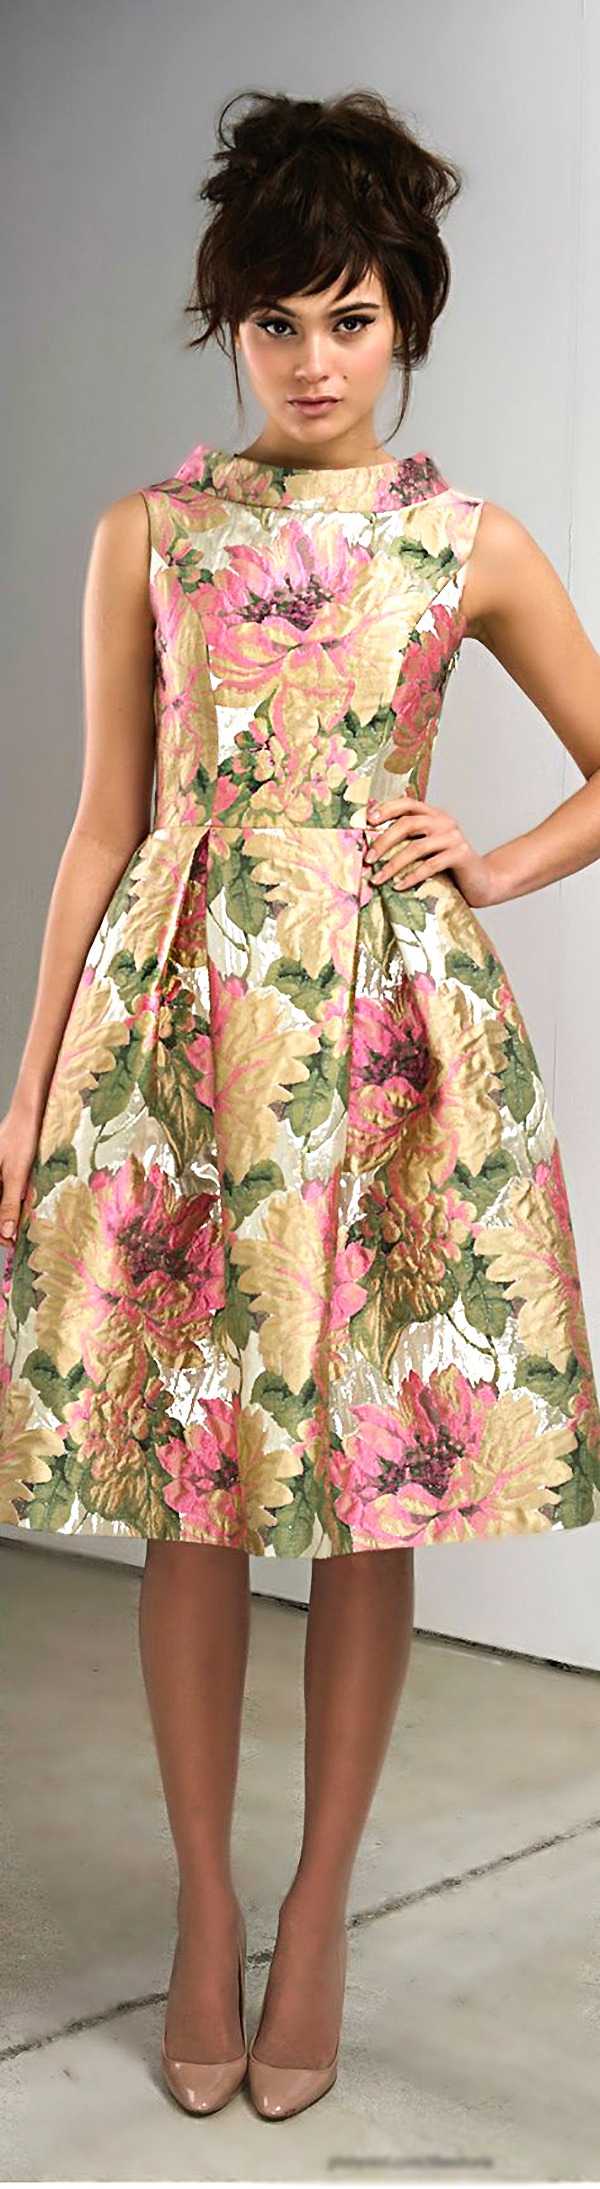 Цветочные принты на летних и вечерних платьях: просто, женственно, эффектно, фото № 7